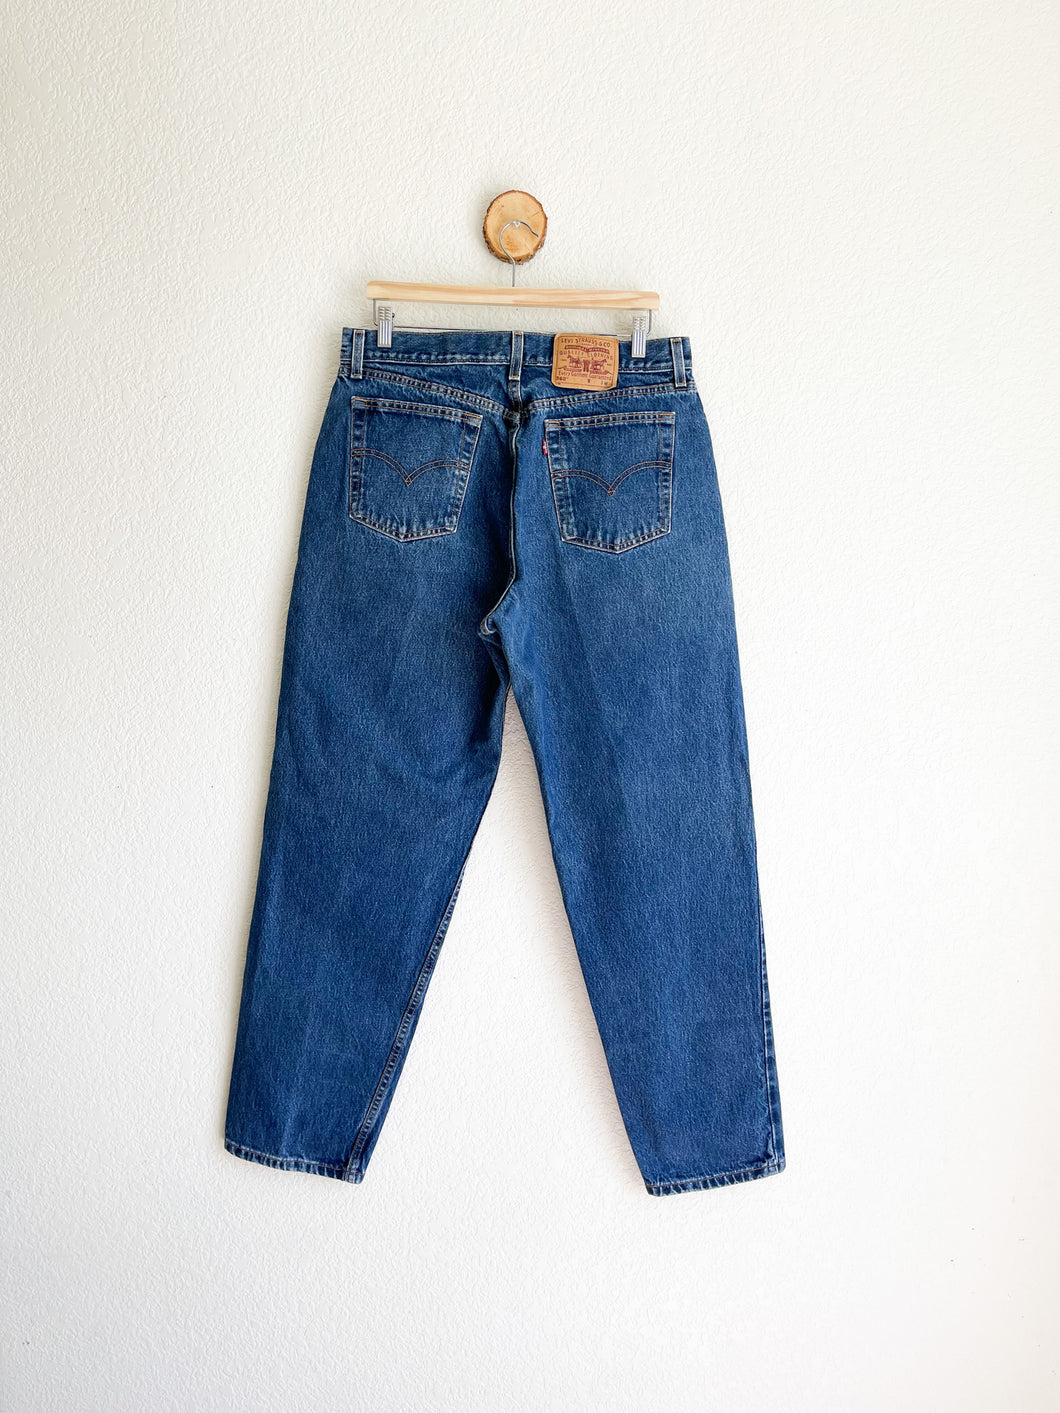 Vintage Levi's 560 Jeans - 33